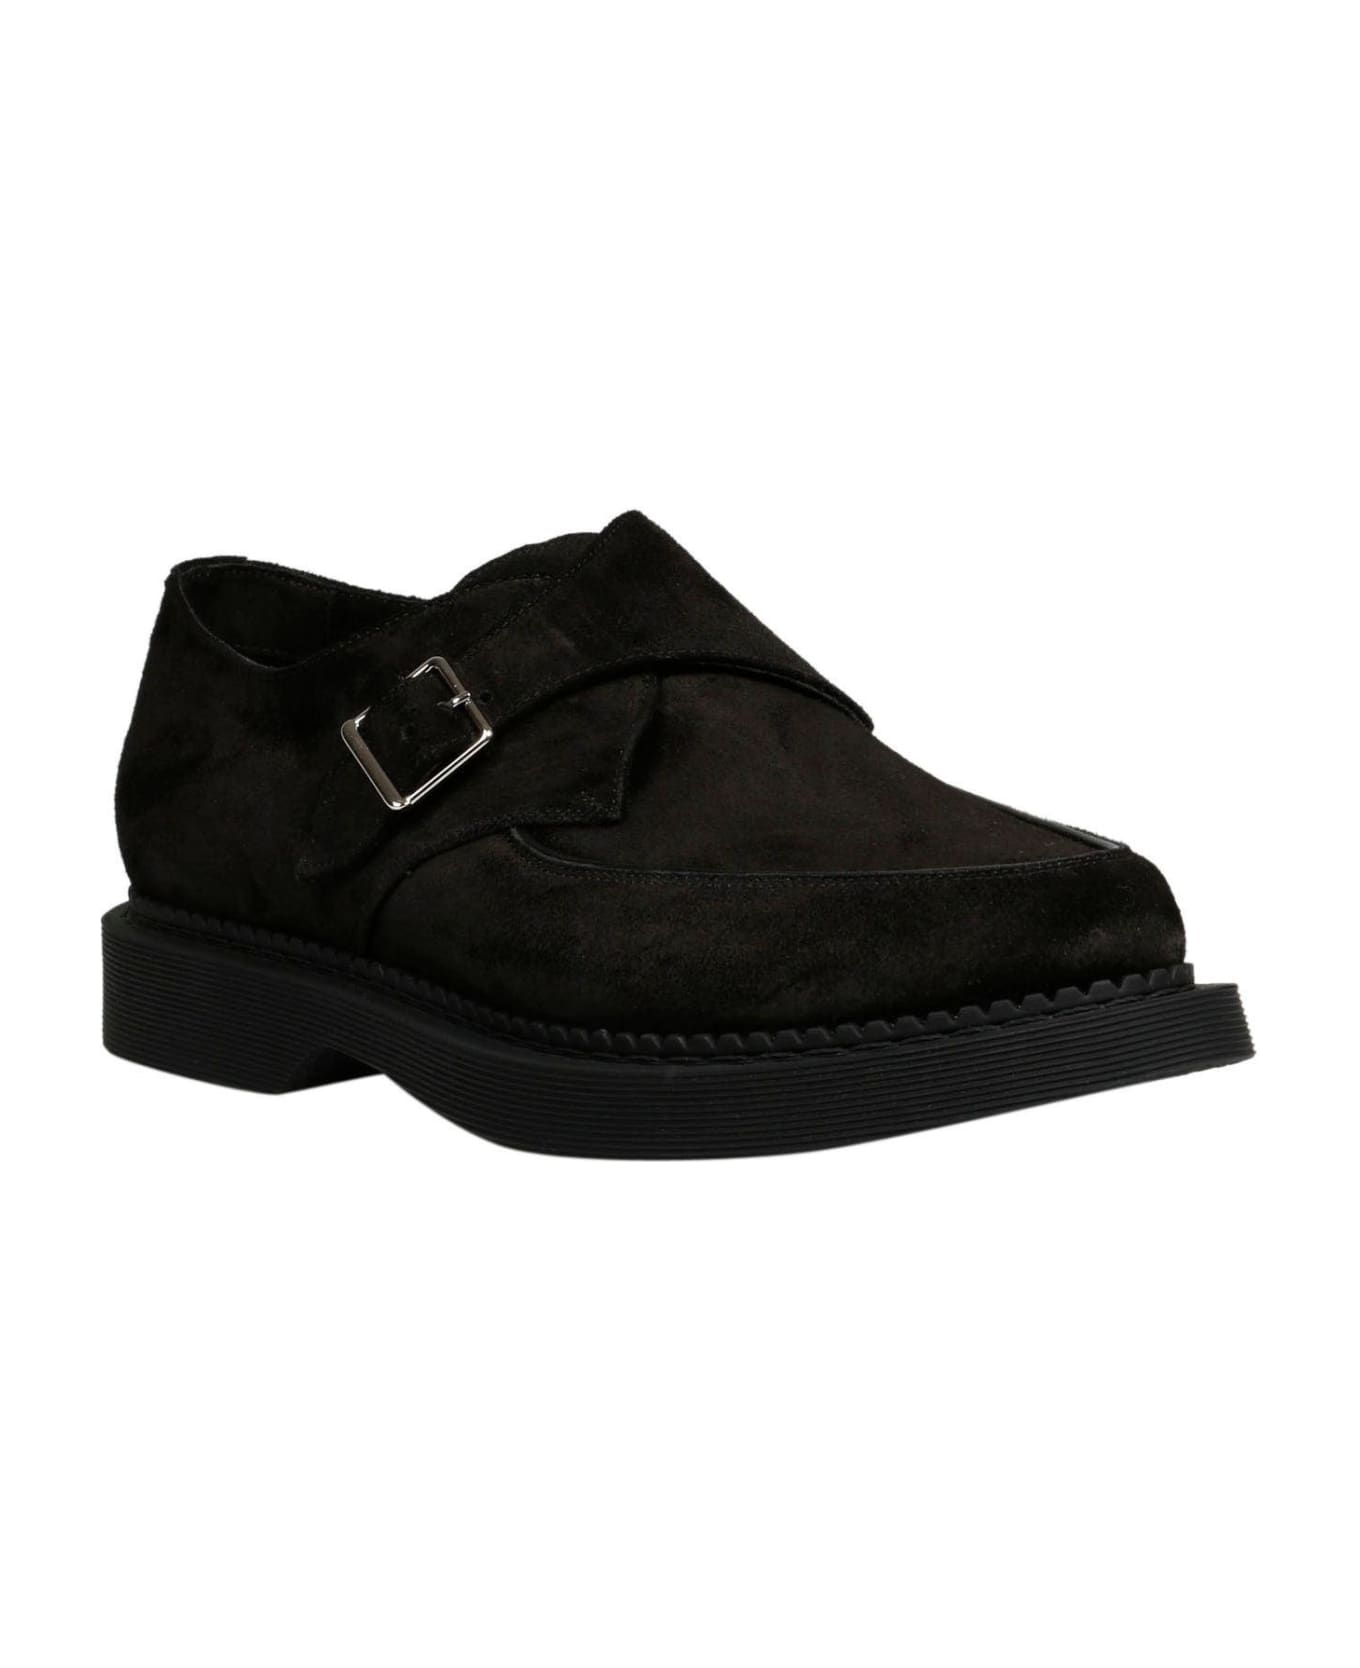 Saint Laurent Monk Strap Loafers - BLACK